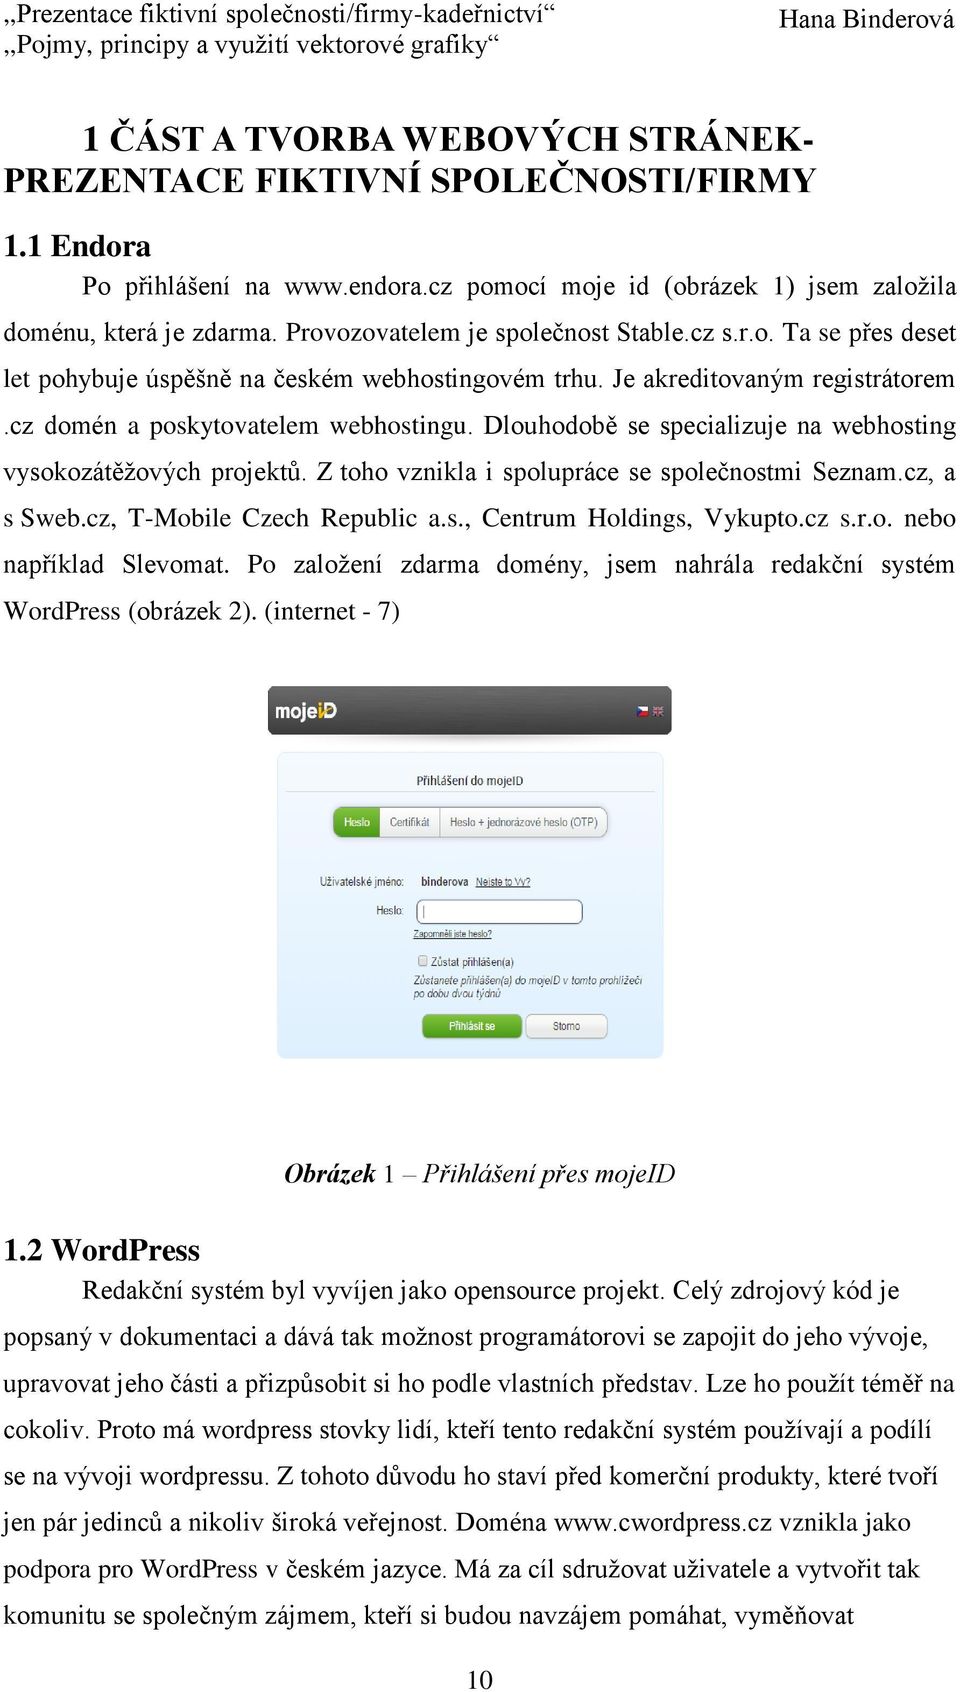 Dlouhodobě se specializuje na webhosting vysokozátěžových projektů. Z toho vznikla i spolupráce se společnostmi Seznam.cz, a s Sweb.cz, T-Mobile Czech Republic a.s., Centrum Holdings, Vykupto.cz s.r.o. nebo například Slevomat.